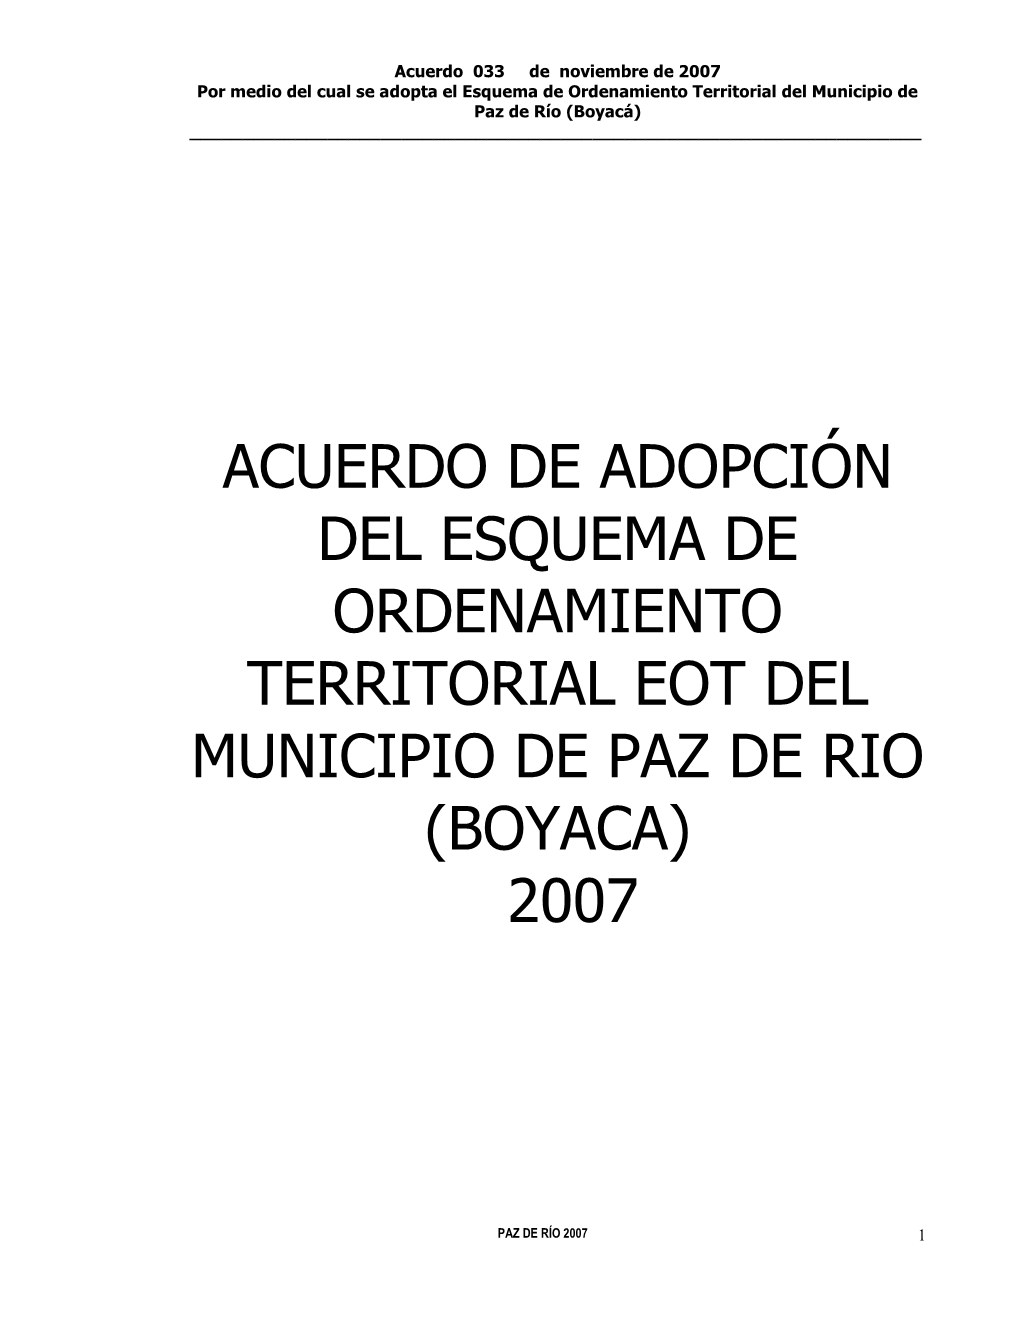 Acuerdo De Adopción Del Esquema De Ordenamiento Territorial Eot Del Municipio De Paz De Rio (Boyaca) 2007